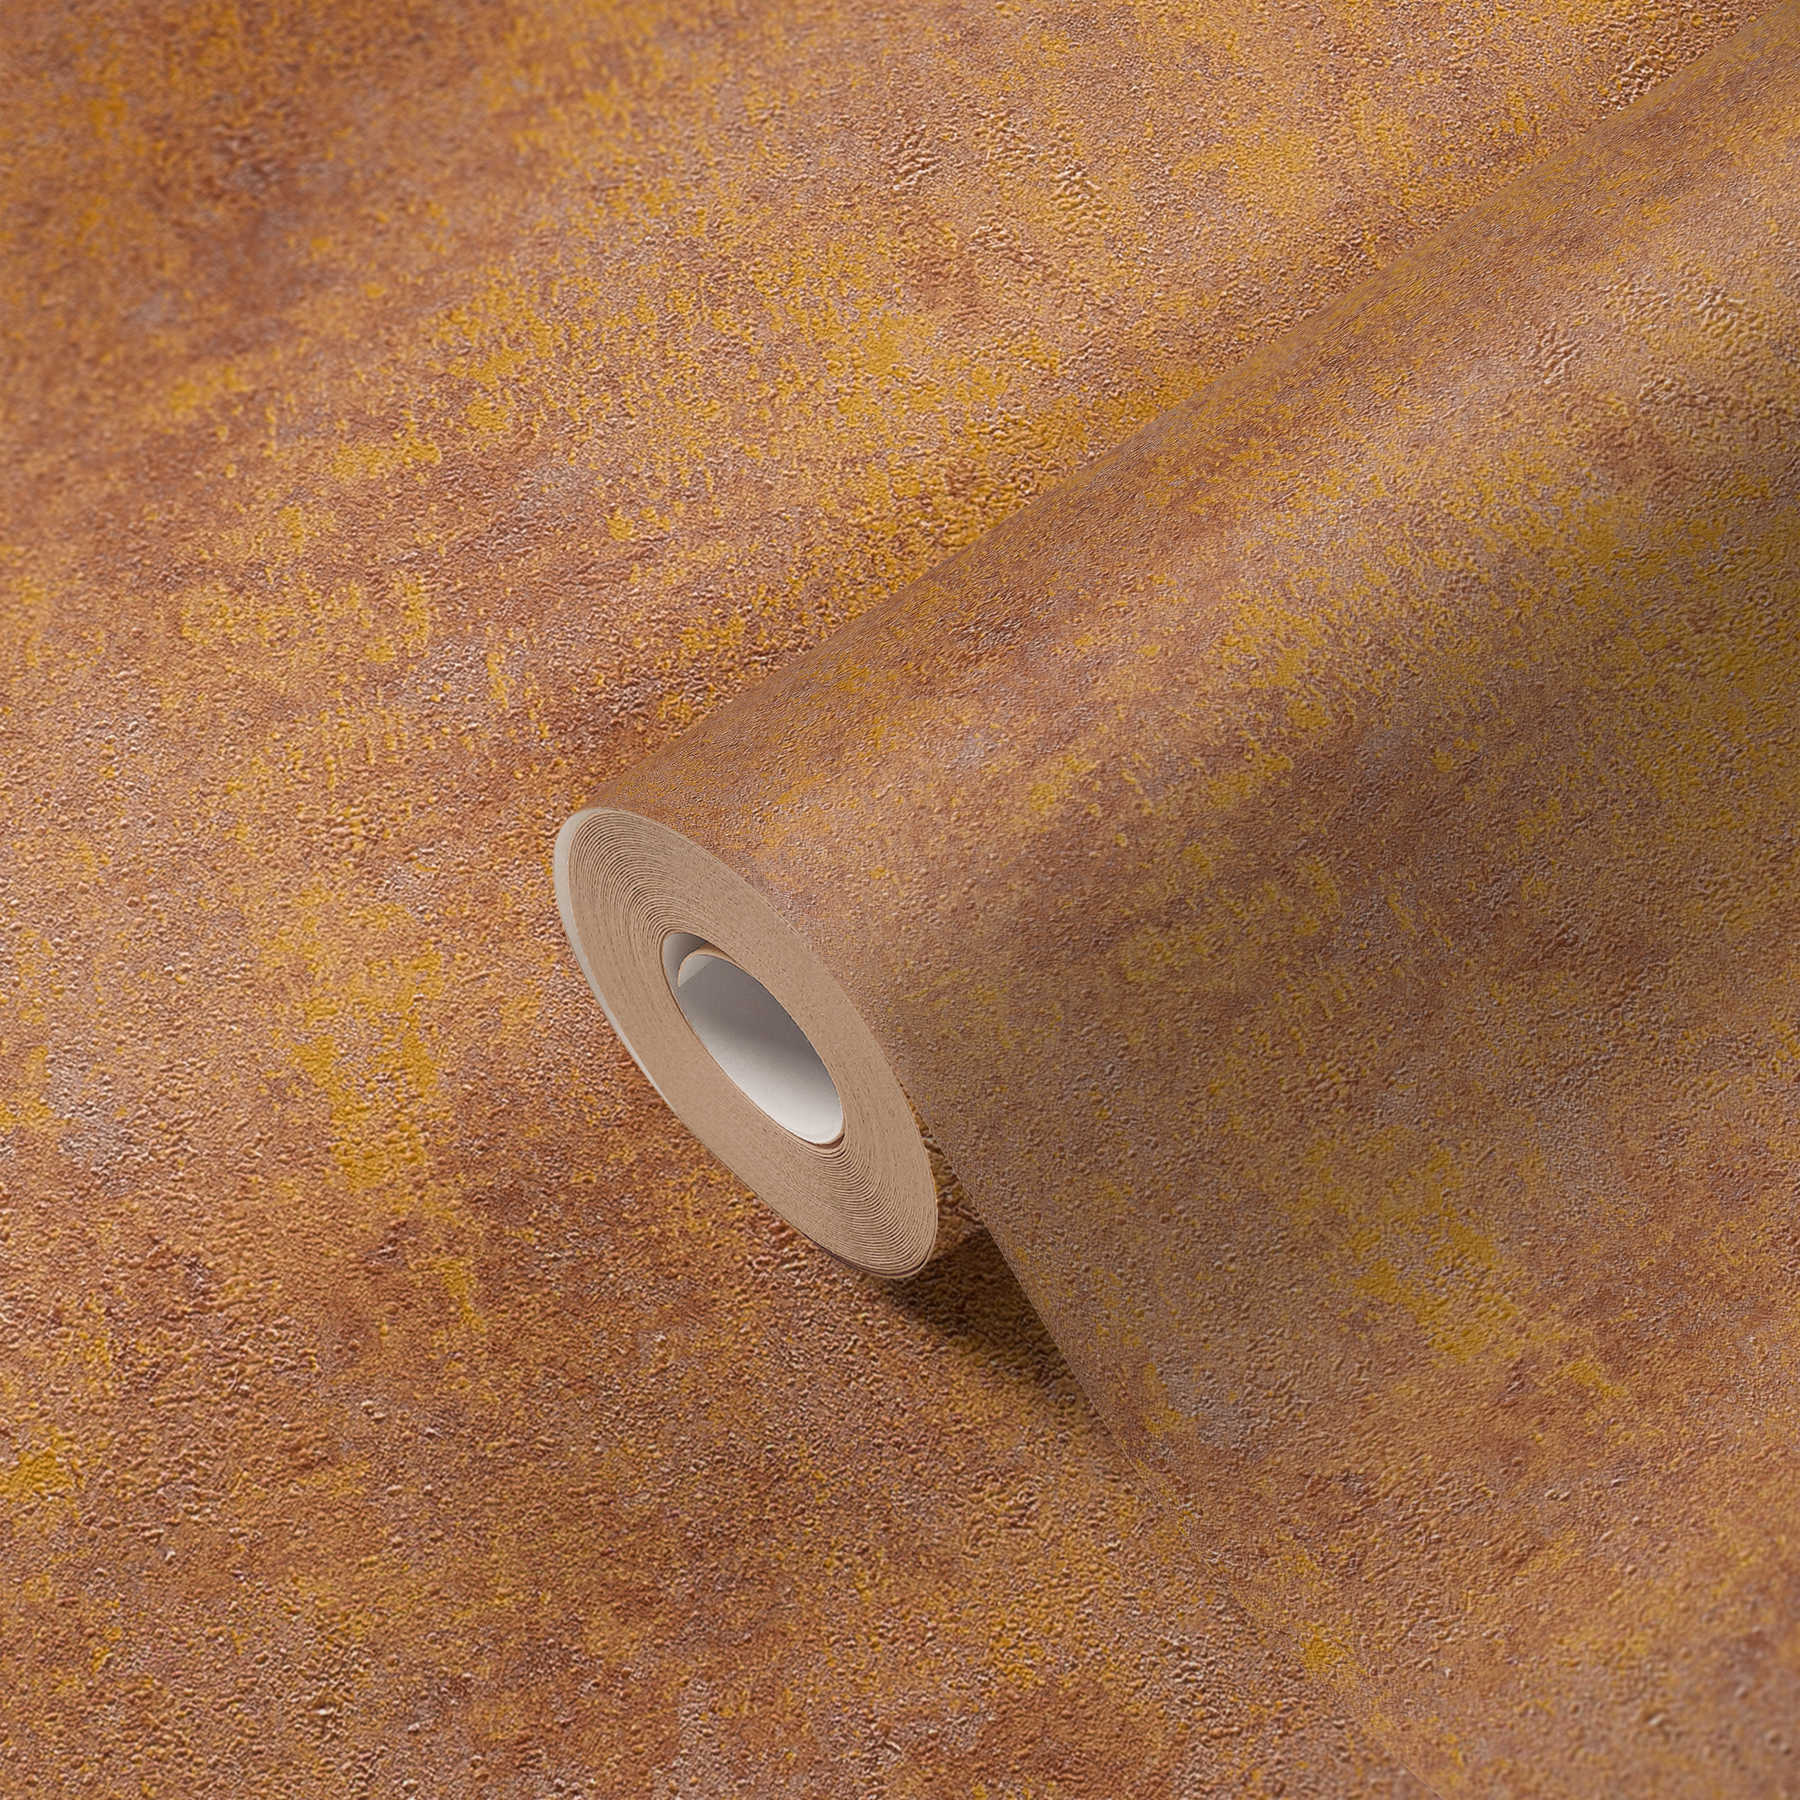             Papel pintado no tejido de aspecto oxidado con efecto brillante - naranja, cobre, marrón
        